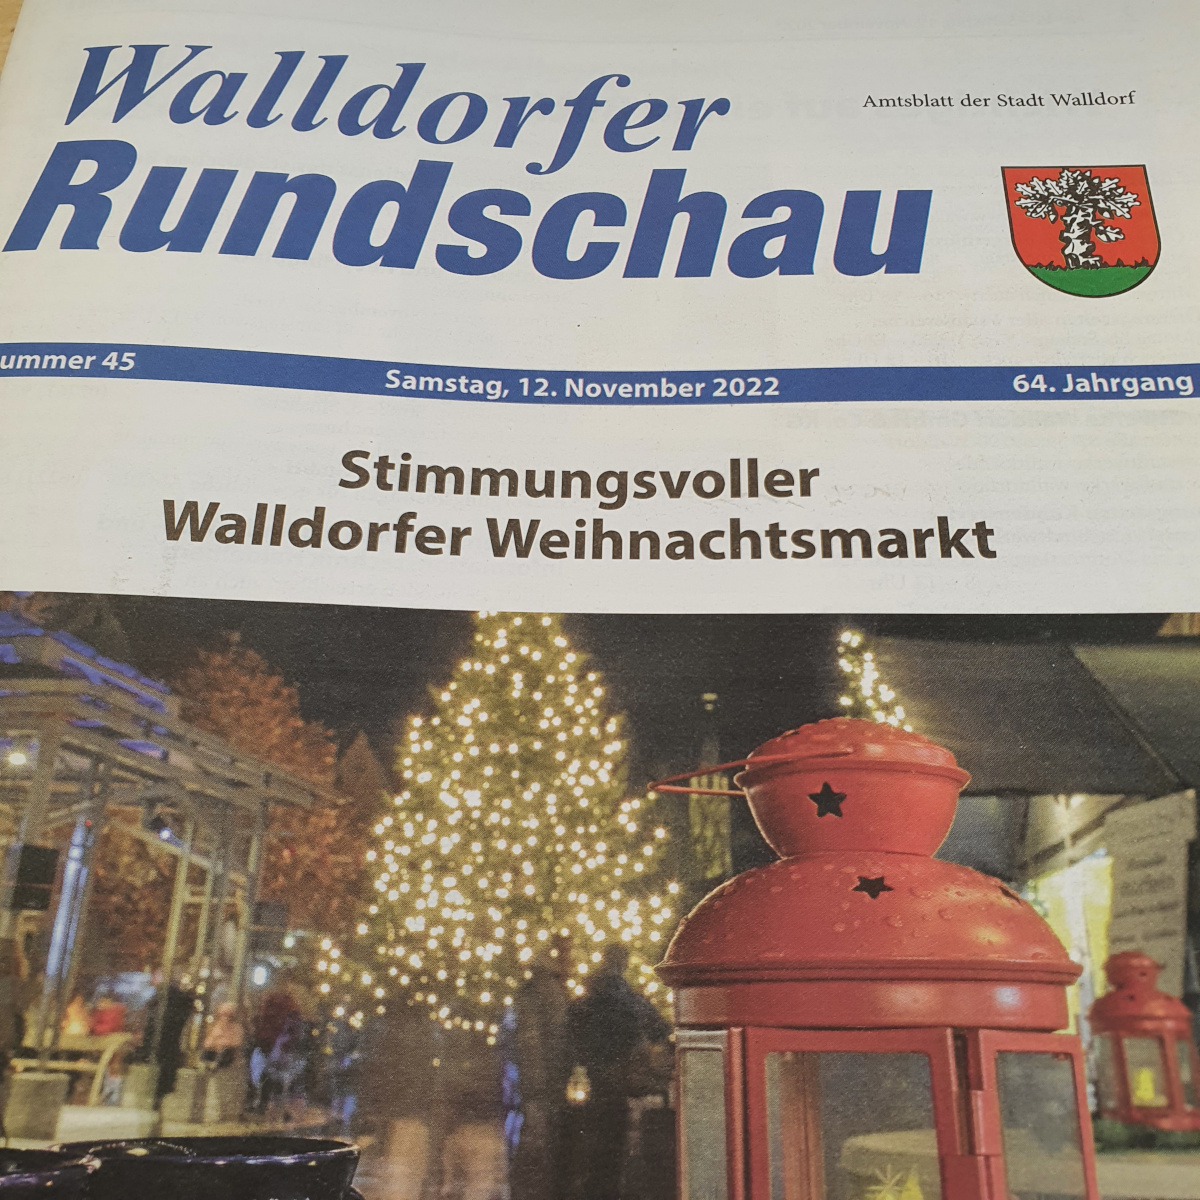 Die Walldorfer Rundschau 2022 Nr. 45 | Foto: Dr. Clemens Kriesel